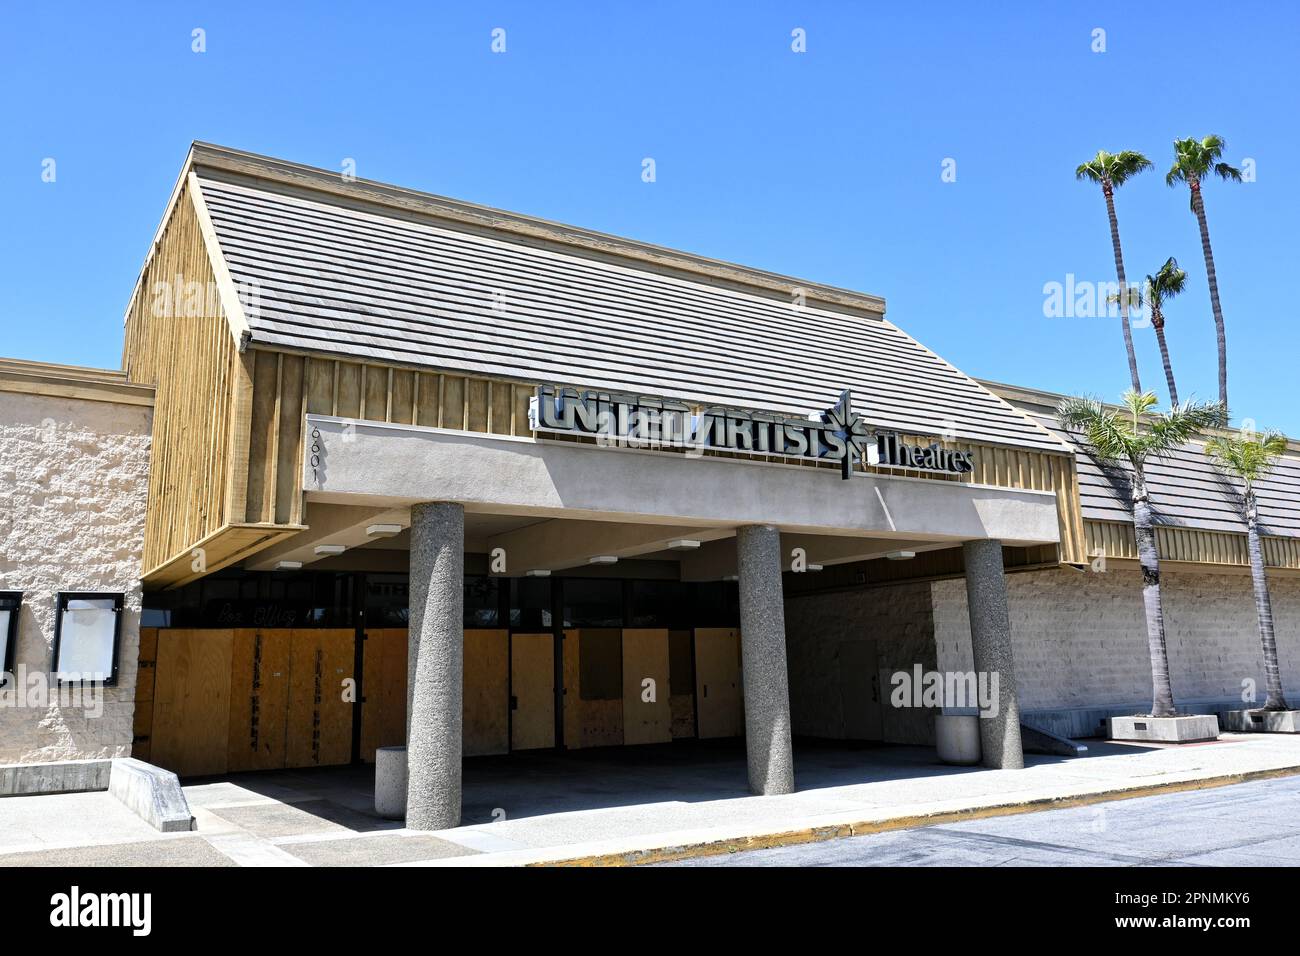 LONG BEACH, CALIFORNIA - 19 Apr 2023: Un Teatro degli artisti Uniti chiuso nella piazza del mercato sulla Pacific Coast Highway. Foto Stock